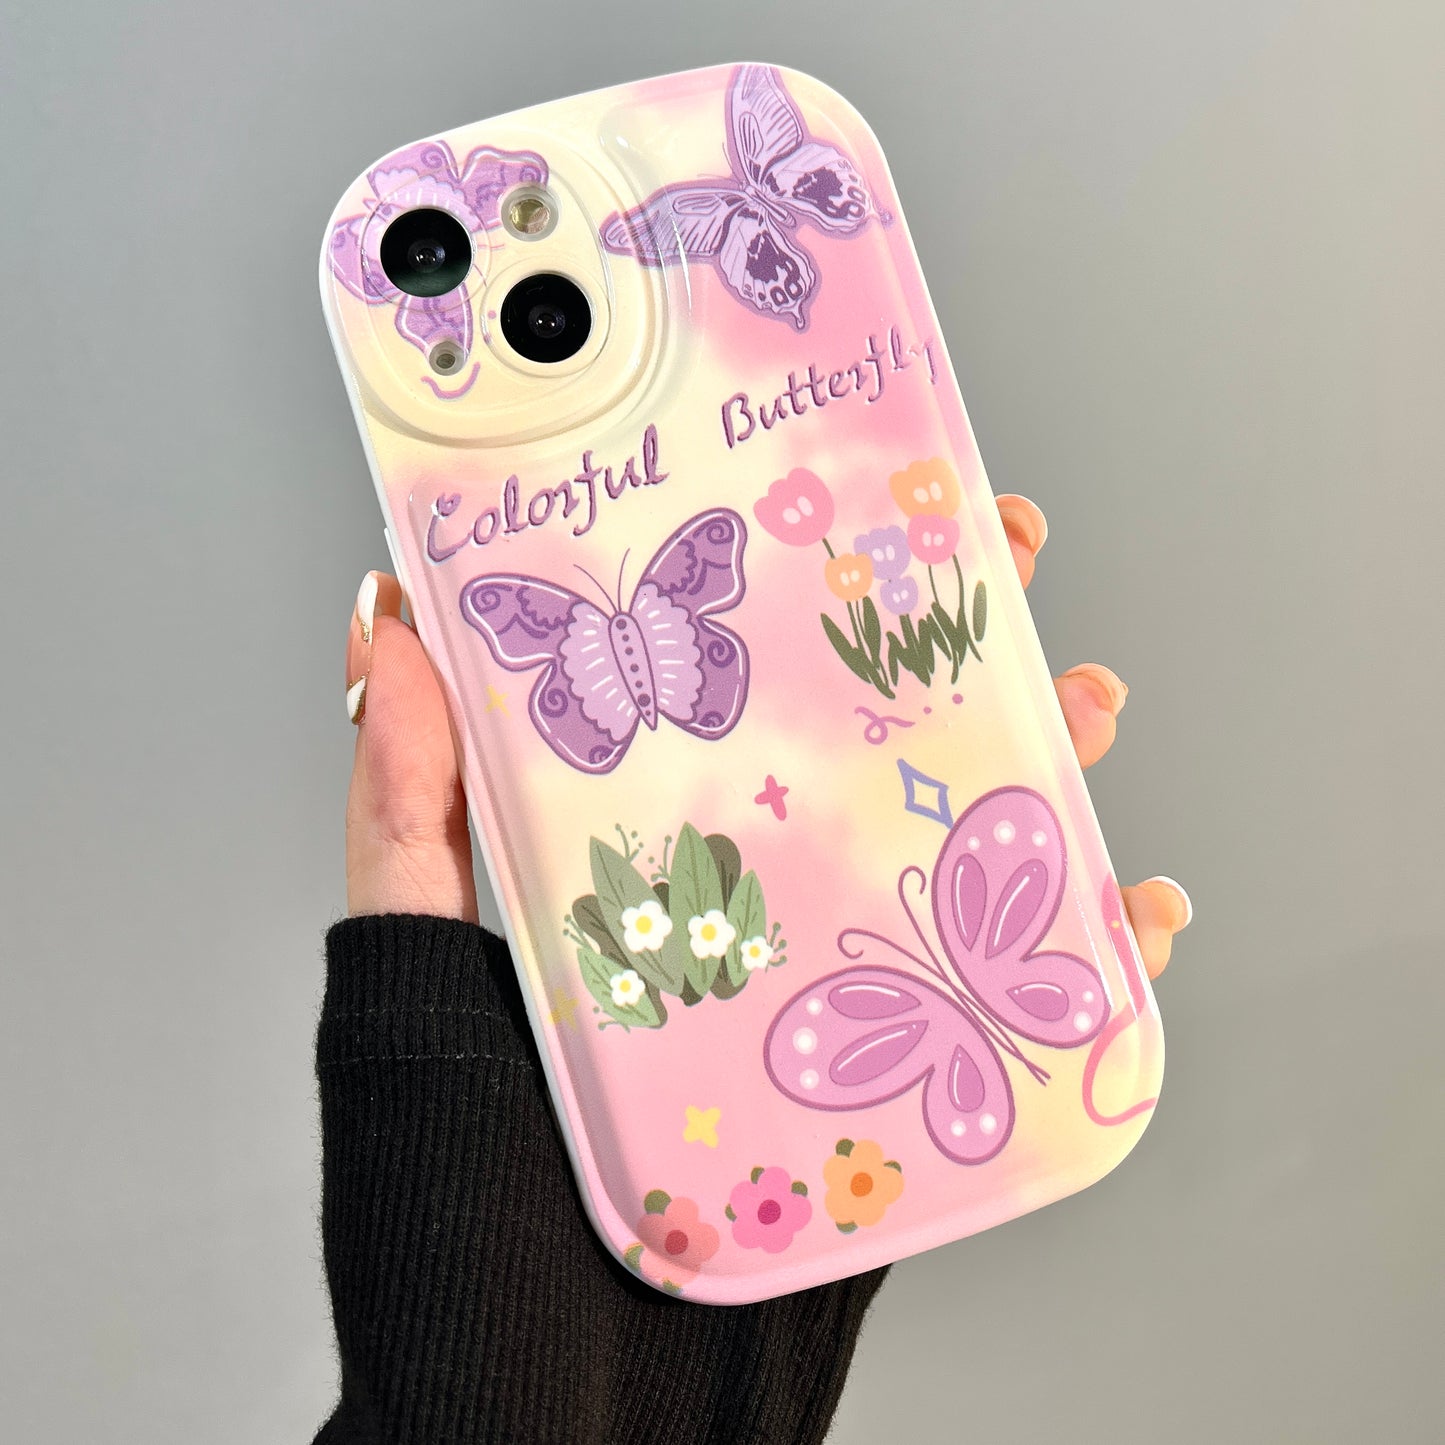 Purple Butterfly Phone Case